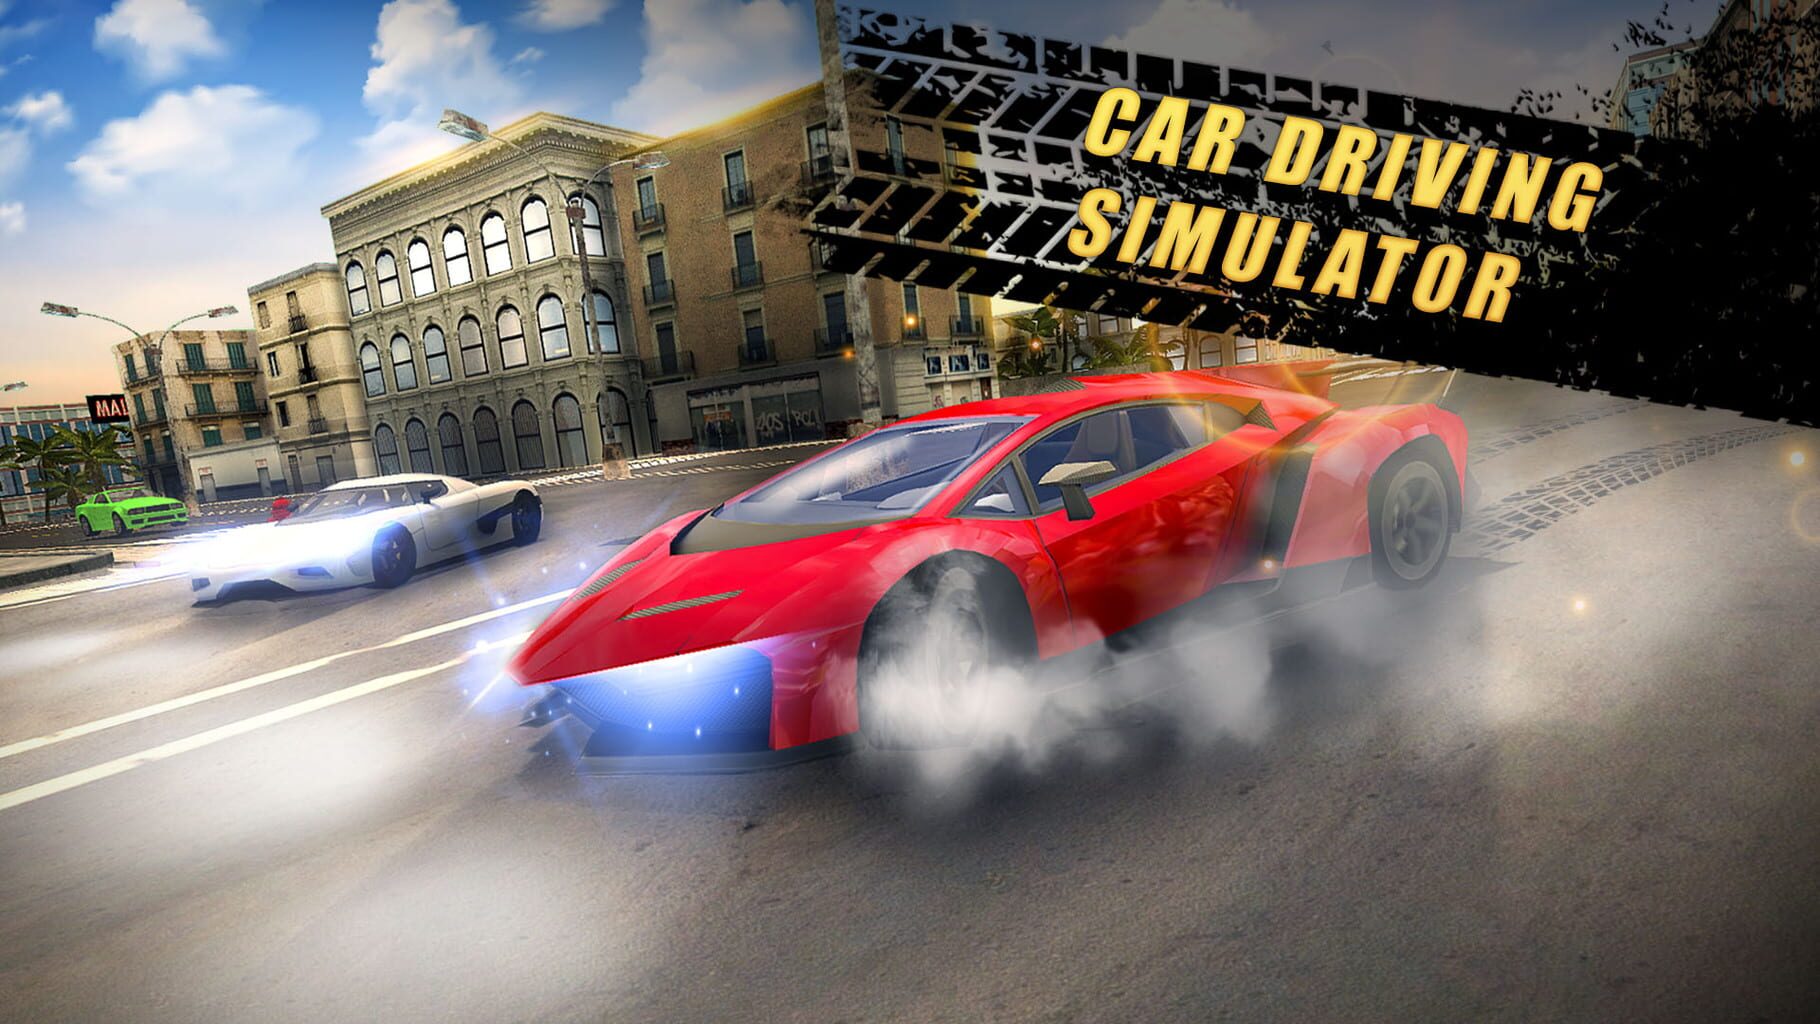 Car Driving Simulator artwork